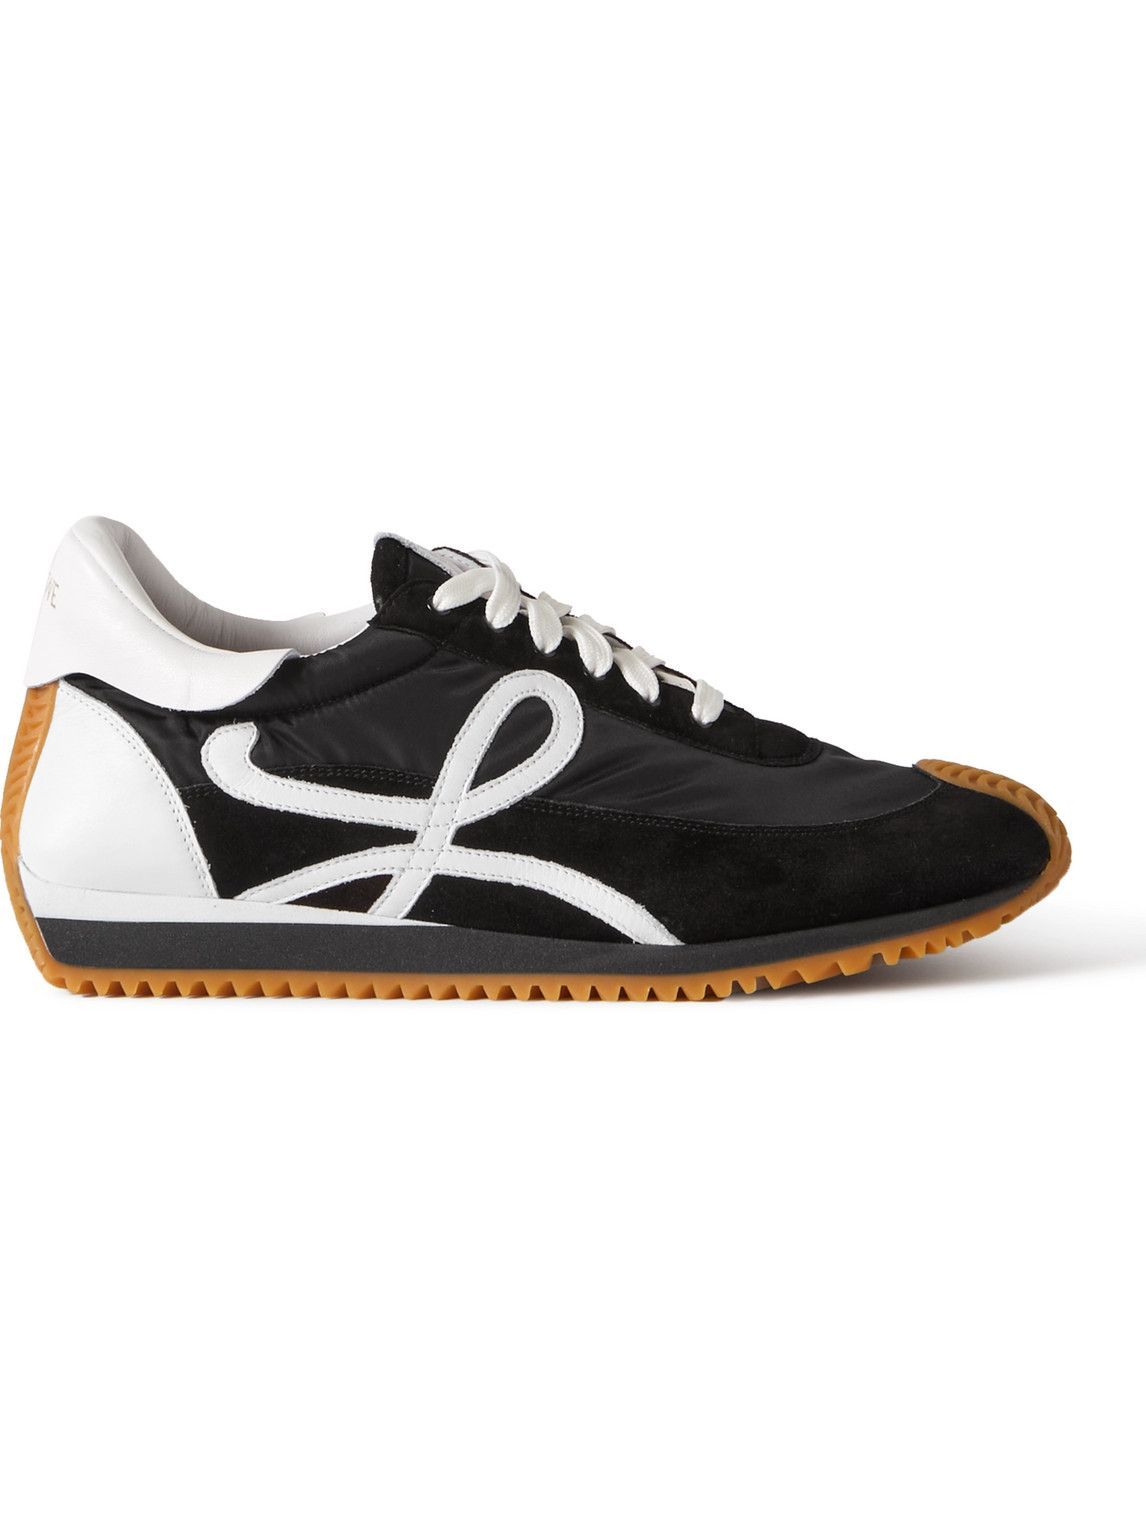 Loewe - Flow Runner Leather-Trimmed Suede and Nylon Sneakers - Black Loewe